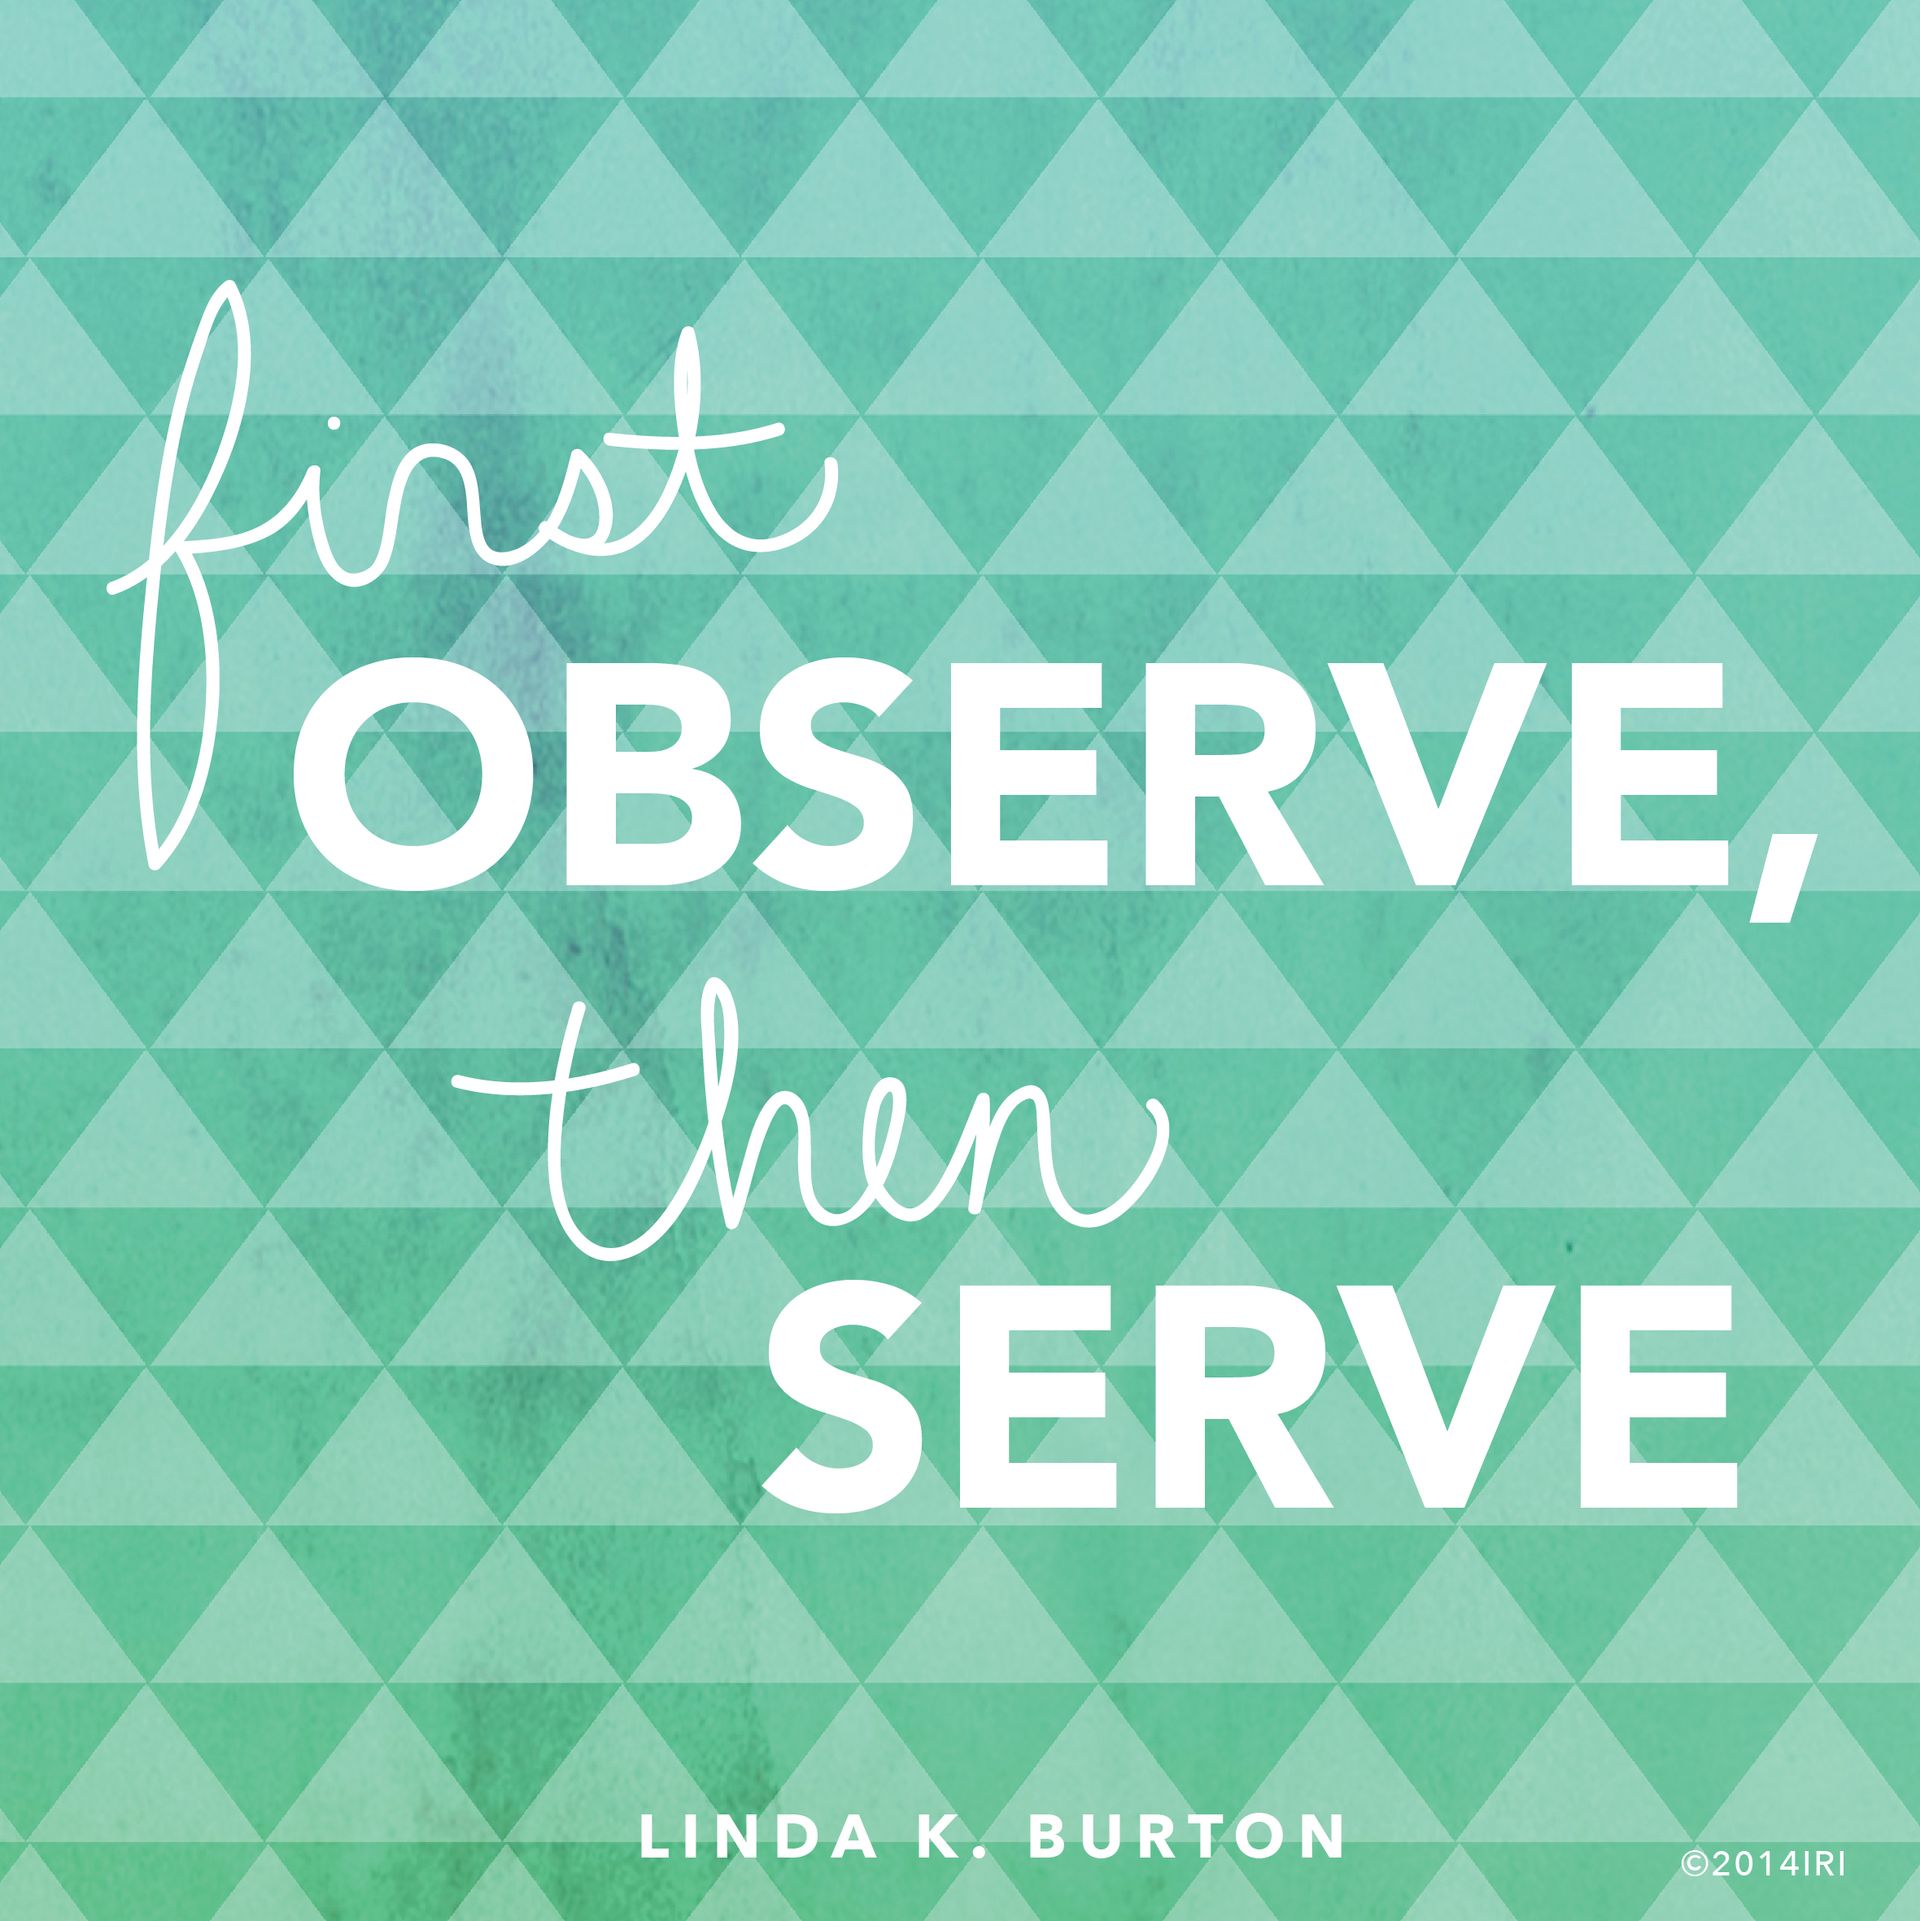 “First observe, then serve.”—Sister Linda K. Burton, “First Observe, Then Serve”